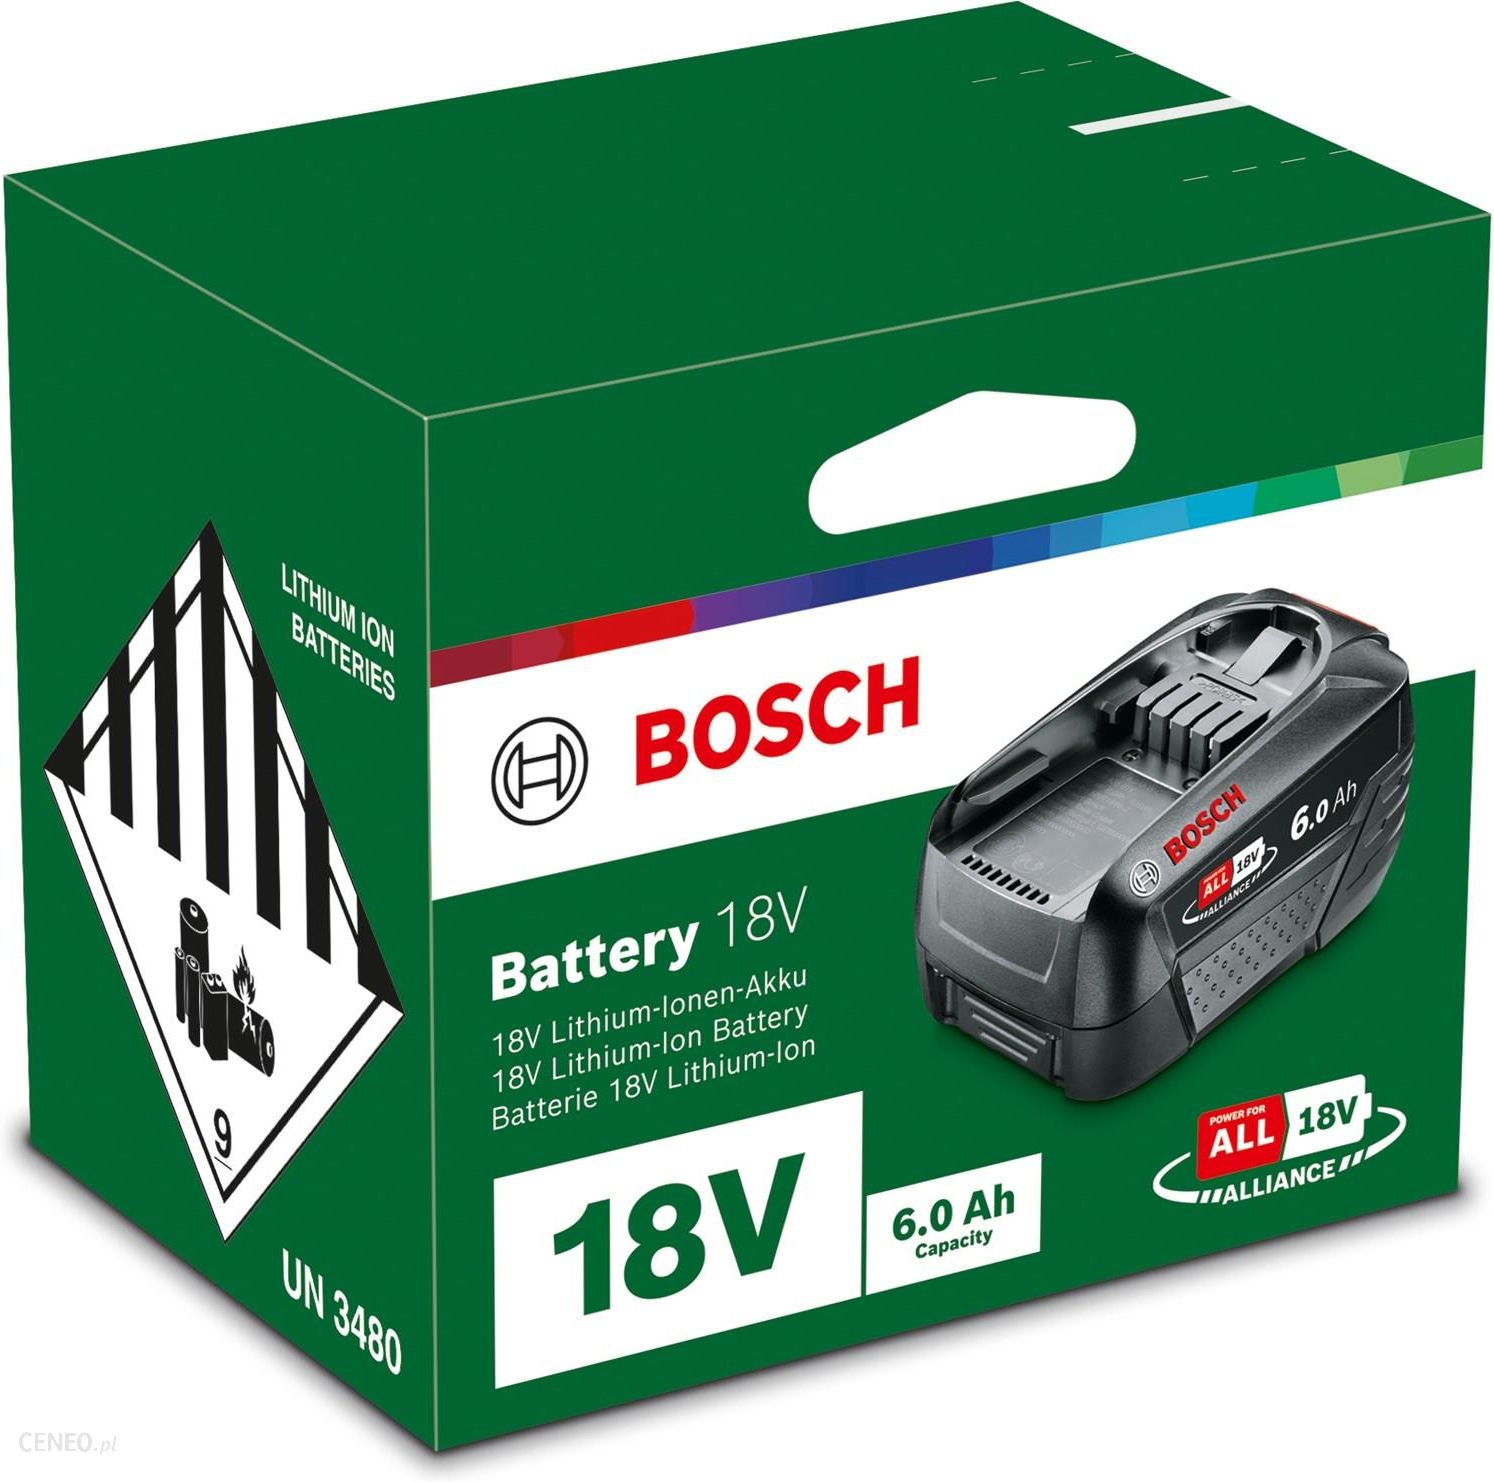 BOSCH PBA 18V 4.0Ah PowerPlus battery pack - BOSCH 1607A350T0